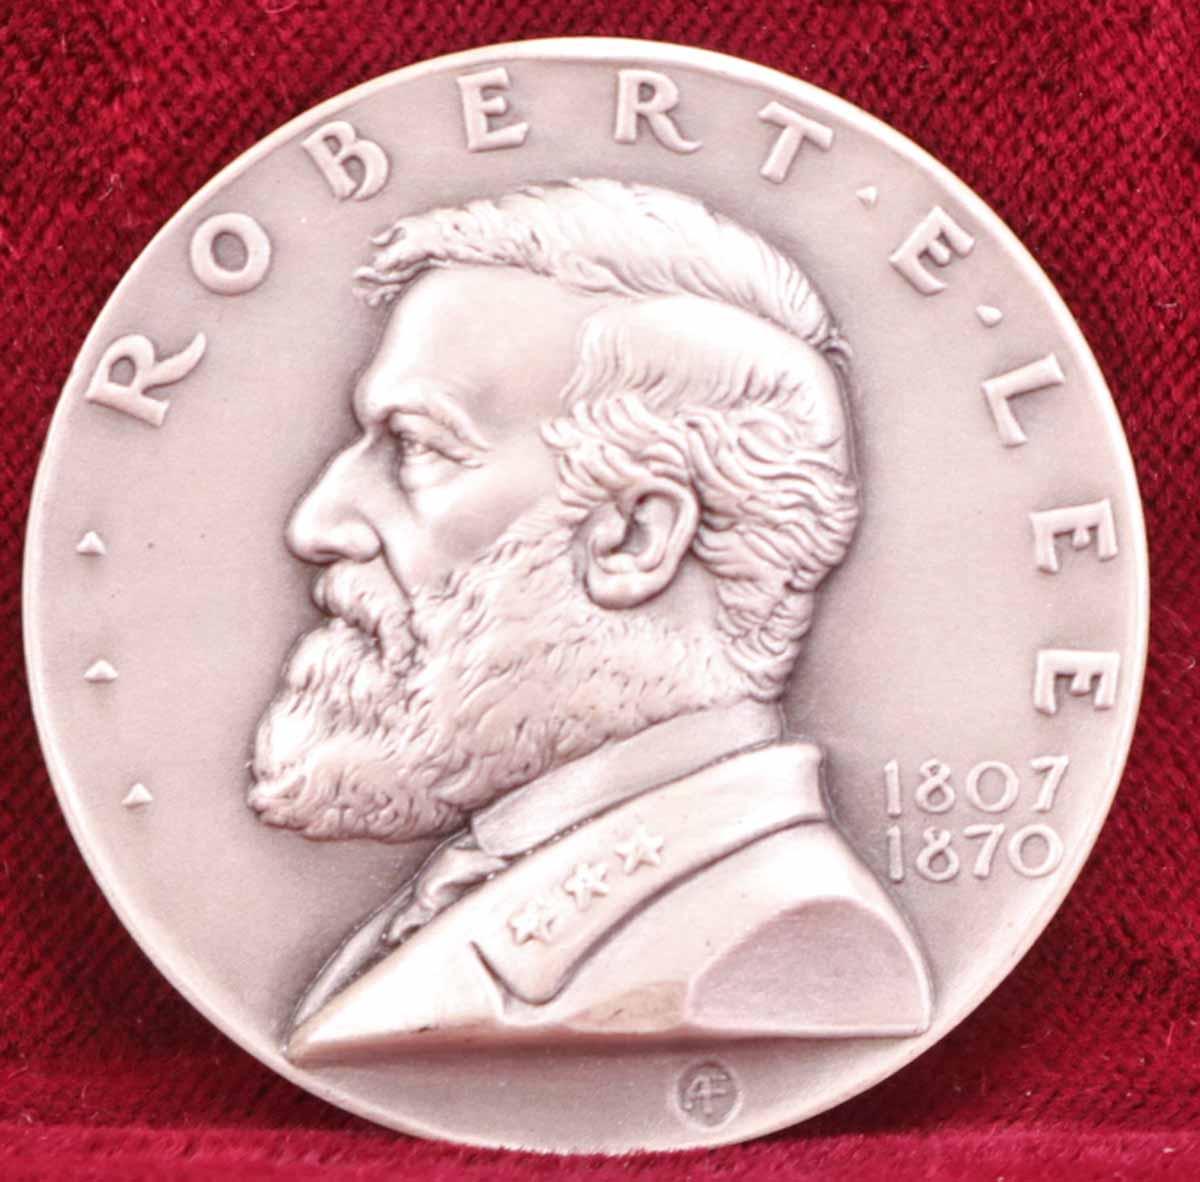 Robert E. Lee Silver Memorial Medal, 1 Troy Ounce